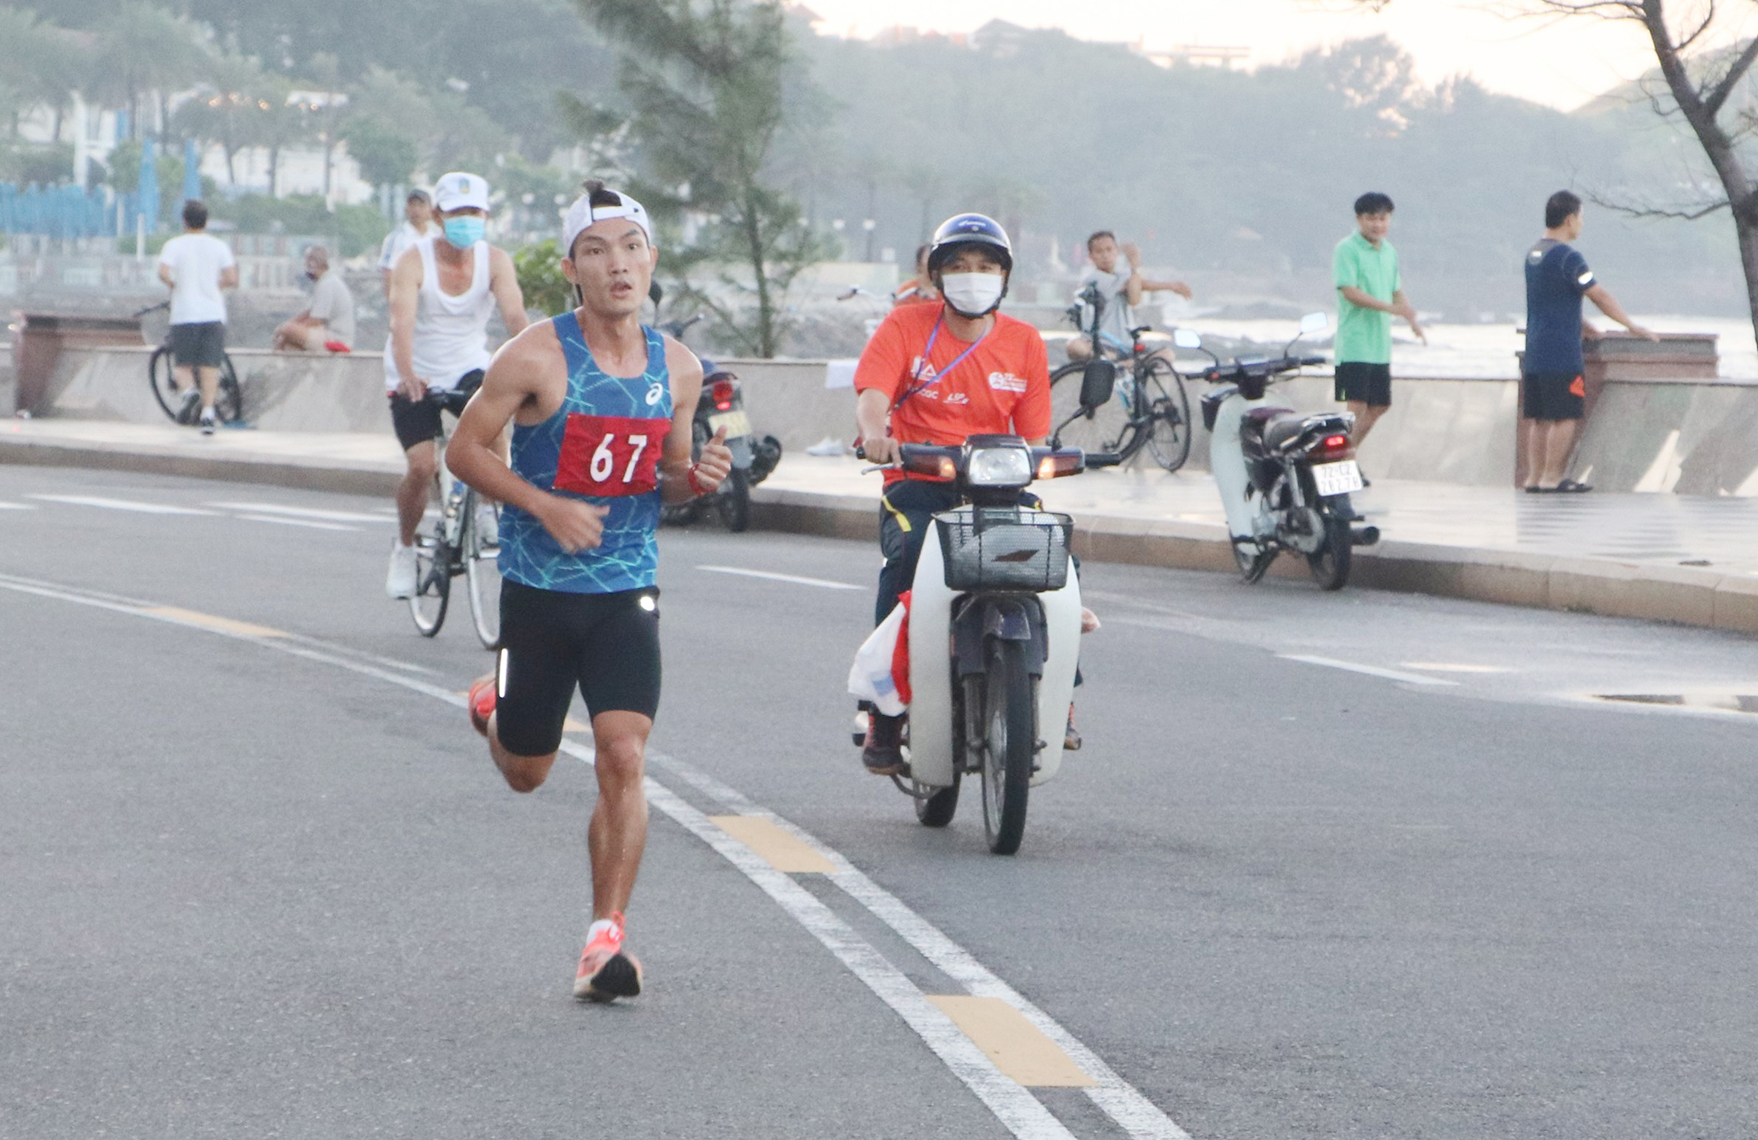 Nhà vô địch SEA Games 31 marathon (42,195km) Hoàng Nguyên Thanh của Bình Phước về nhất cự ly 10km nam hệ tuyển